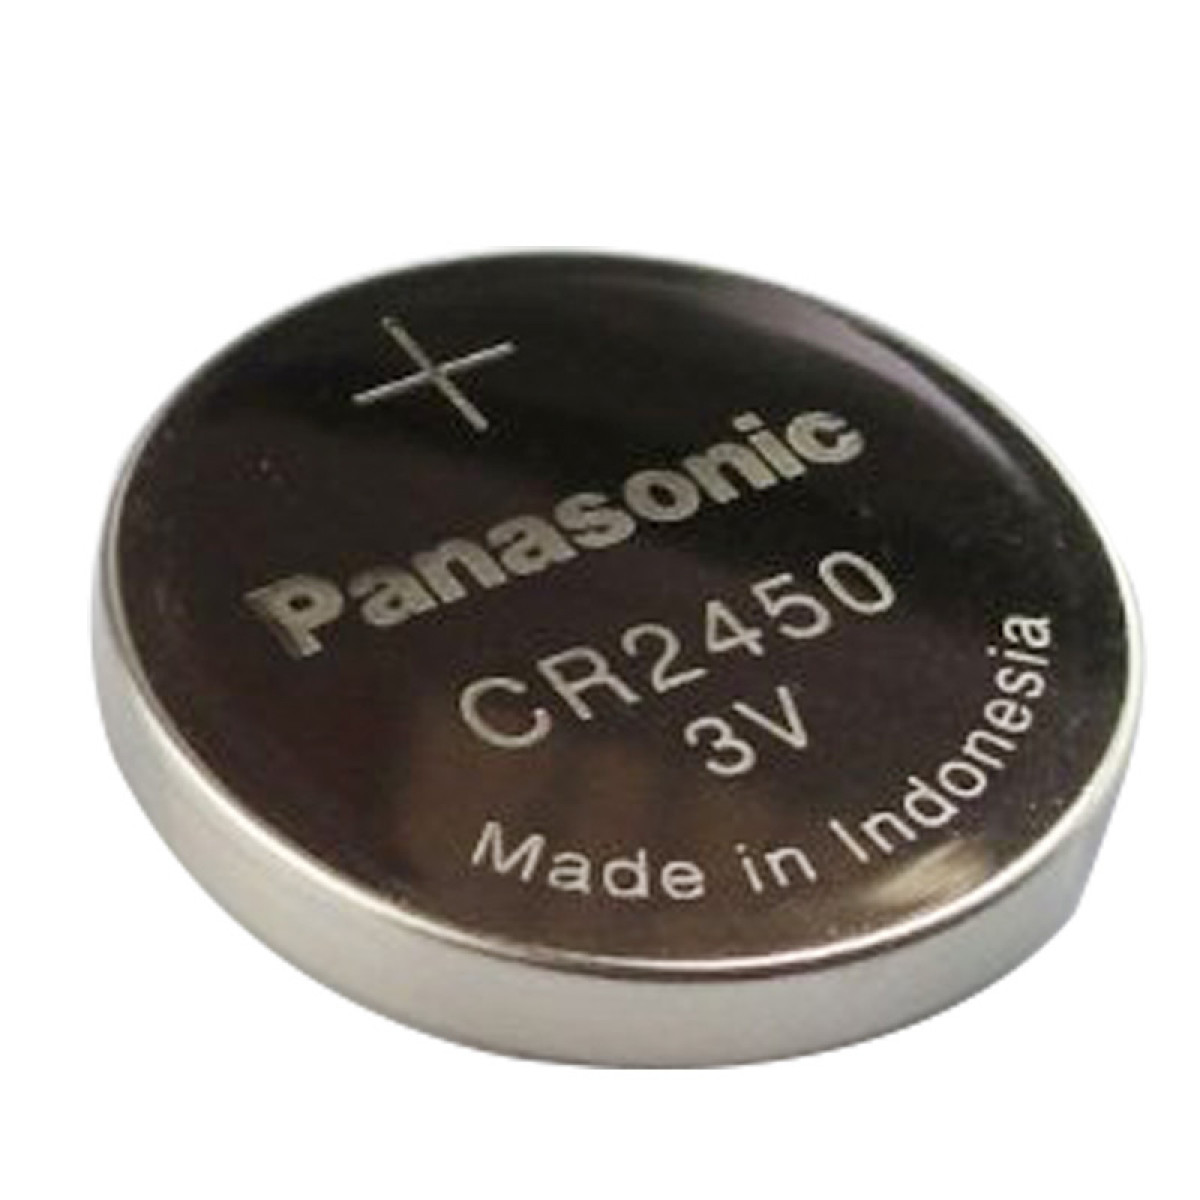 松下（Panasonic）CR2450纽扣电池电子3V 5粒